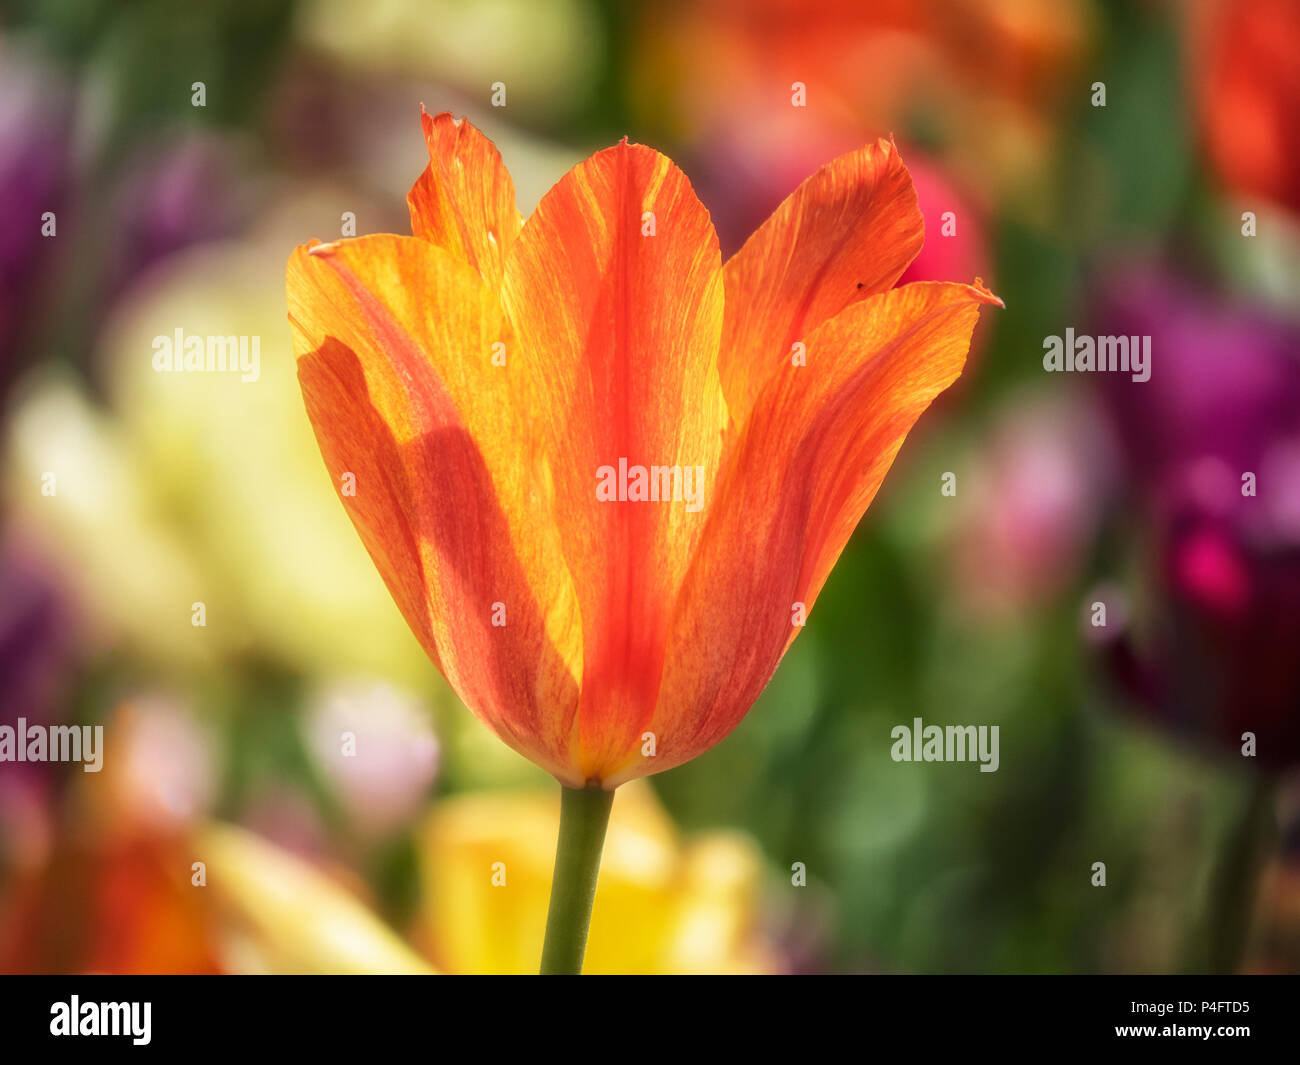 SFONDO - Tulip arancione su sfondo multicolore Foto Stock